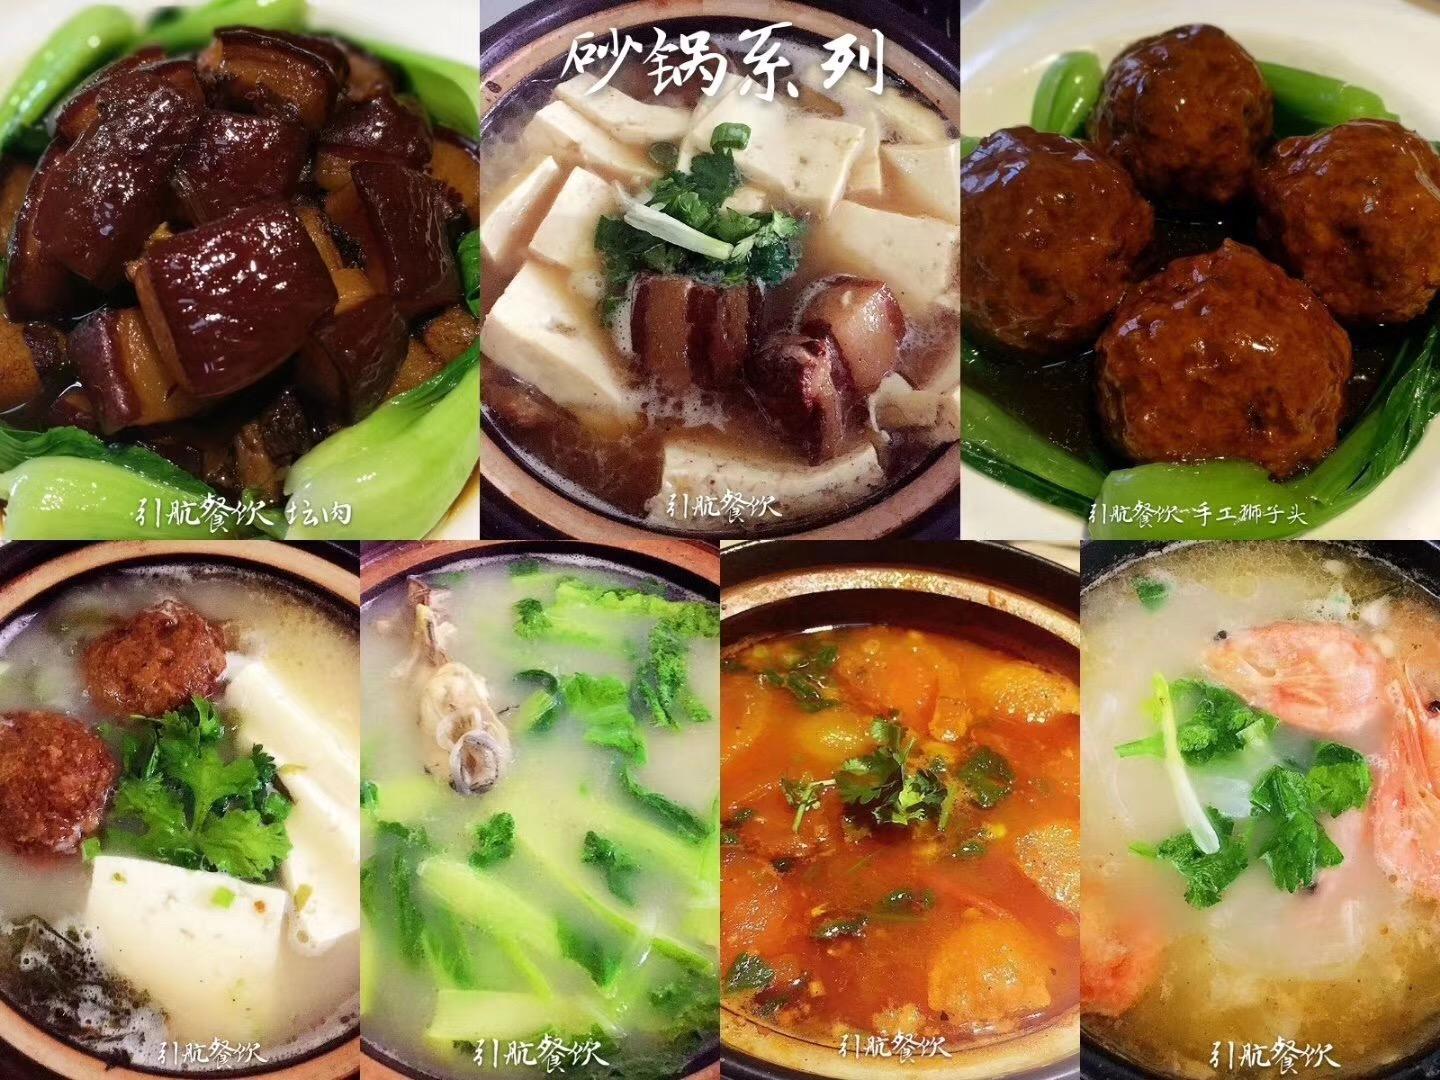 【东北坛肉】炖肉的东北吃法好,值得推广!的做法图解3_铁锅炖肉_美食图片